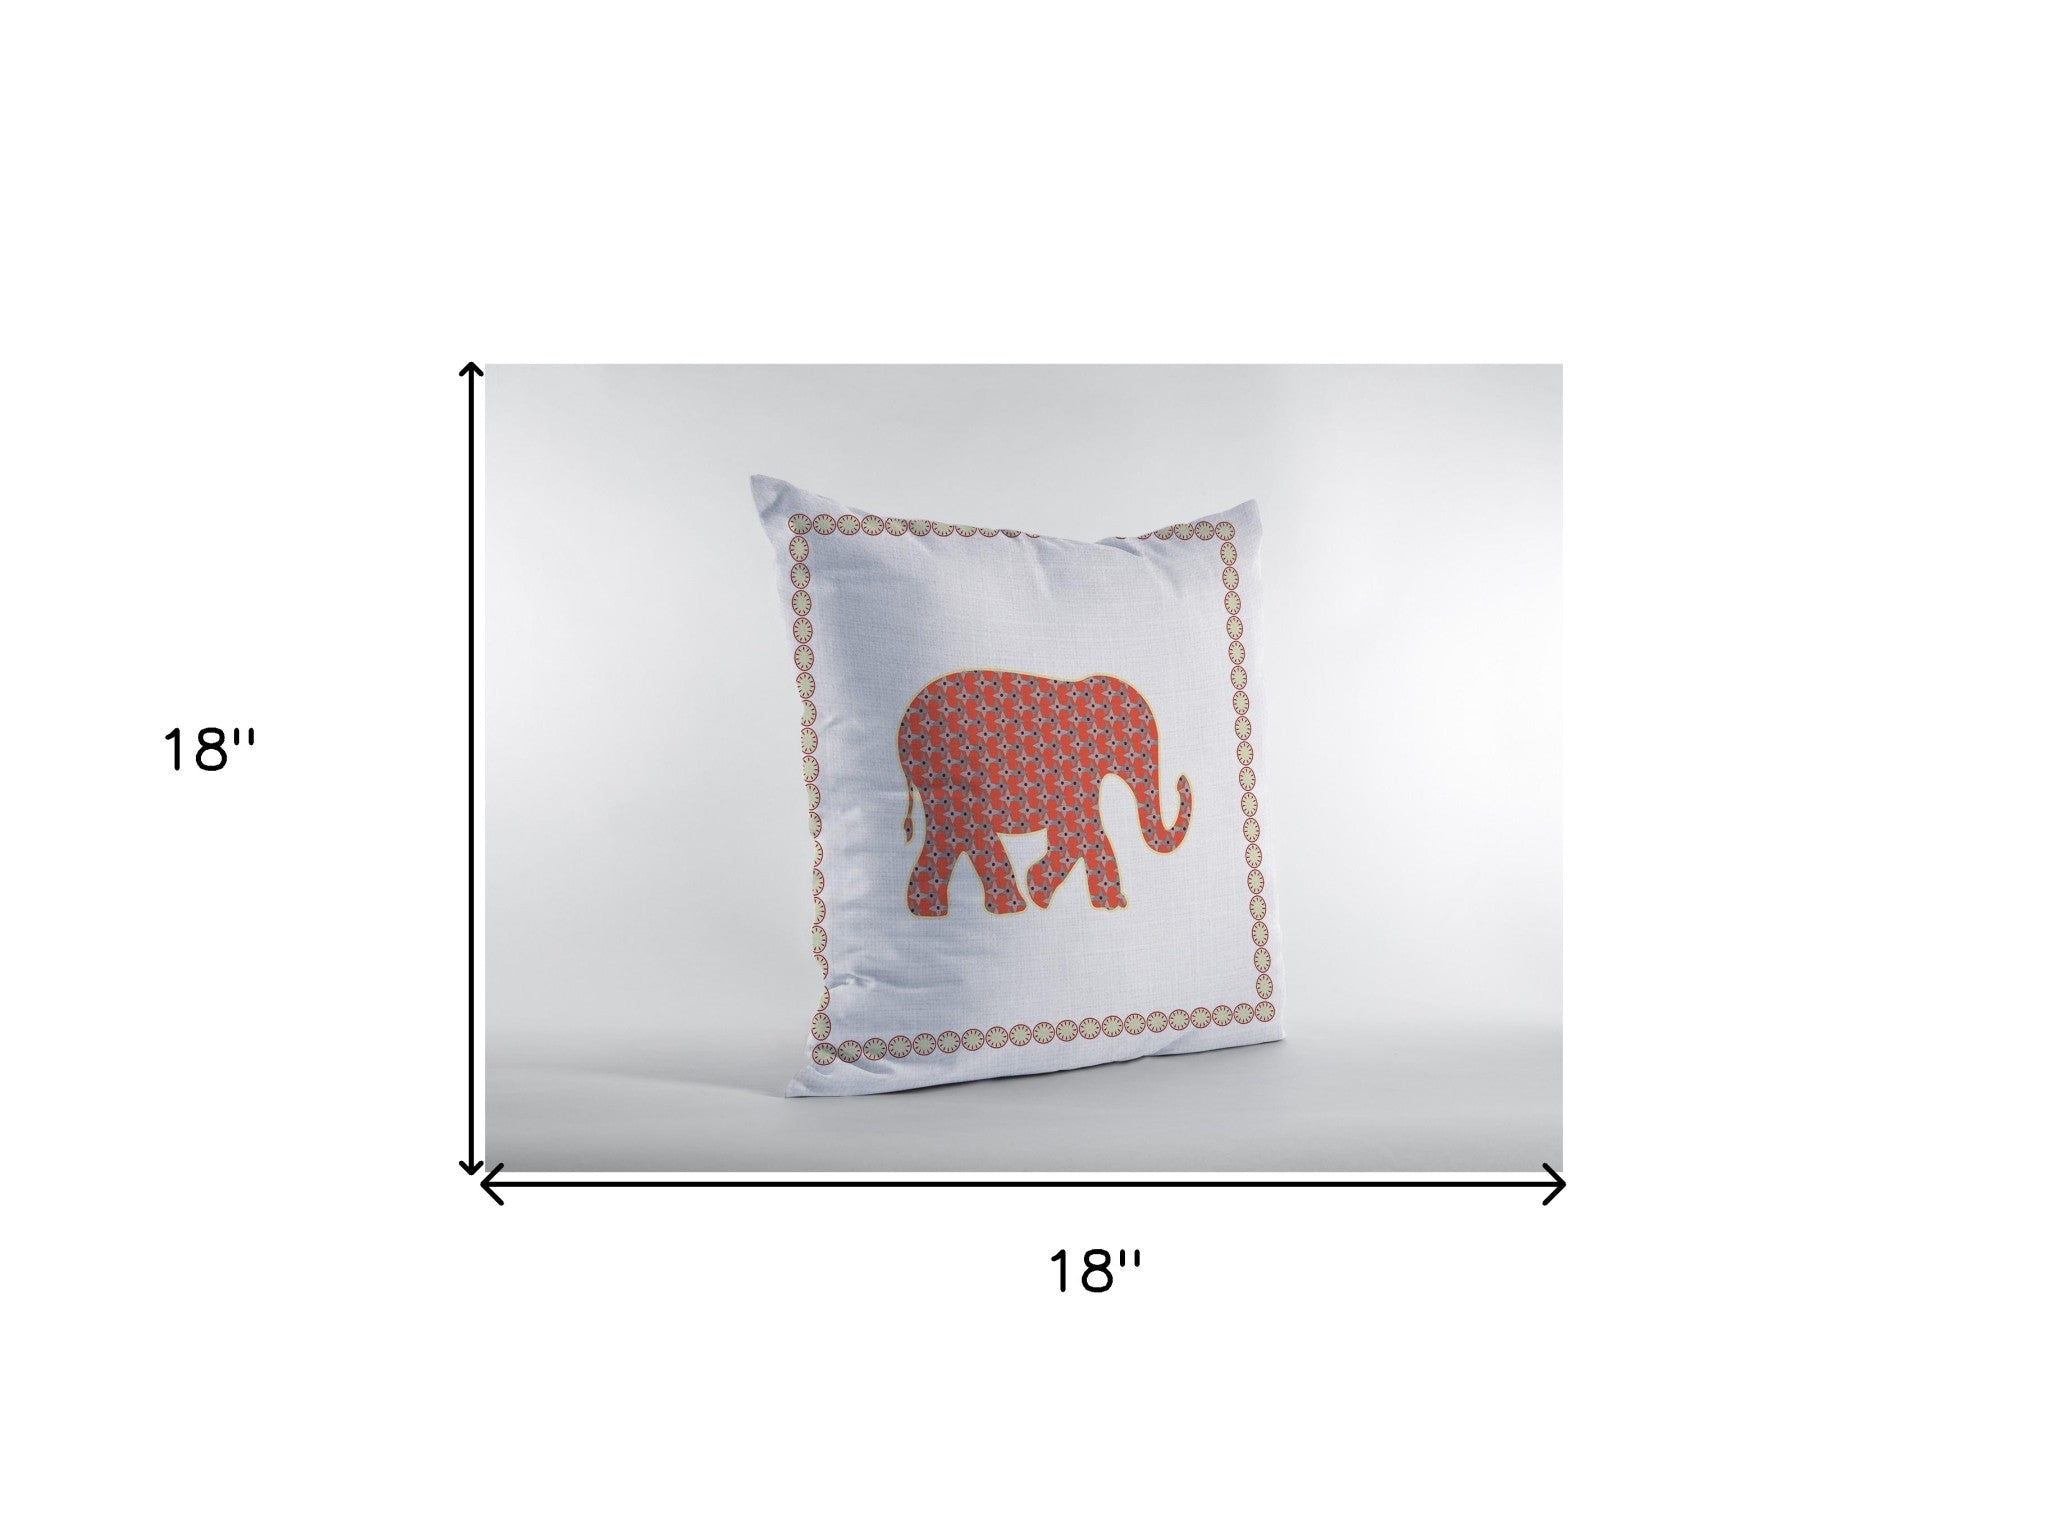 18” Orange White Elephant Zippered Suede Throw Pillow